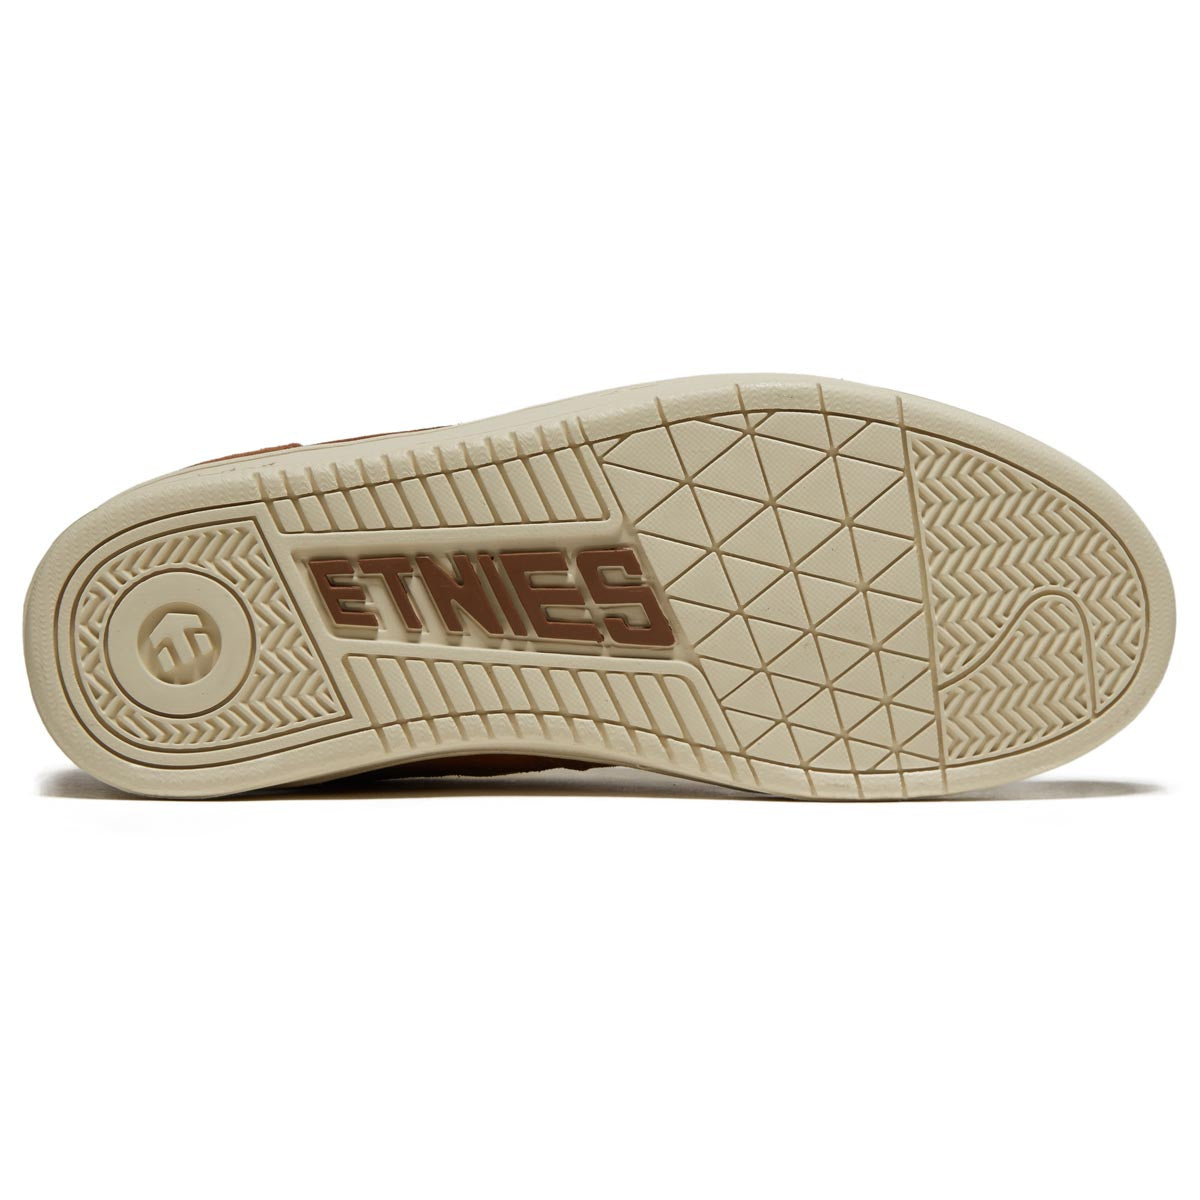 Etnies Snake Shoes - Tan/Brown/Grey image 4